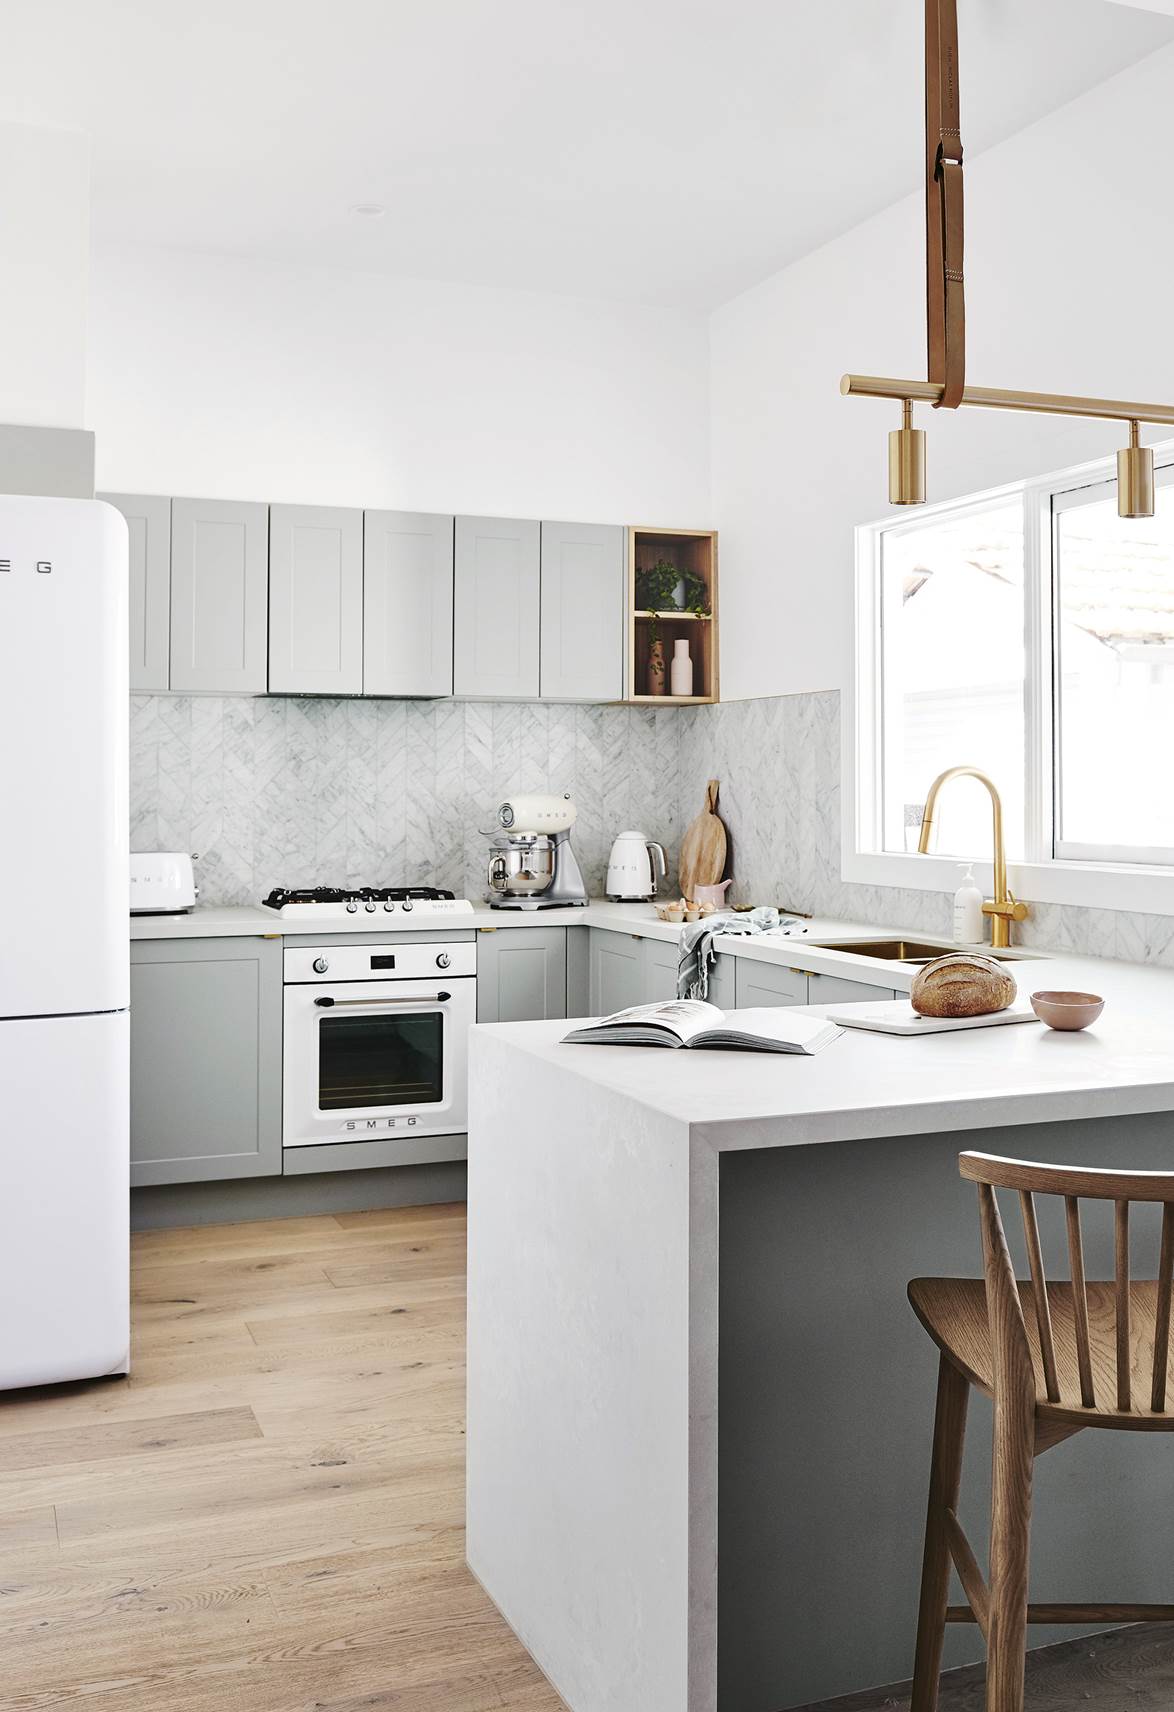 Tủ bếp shaker - lựa chọn thông minh, linh hoạt với mọi phong cách nhà bếp - Ảnh 7.